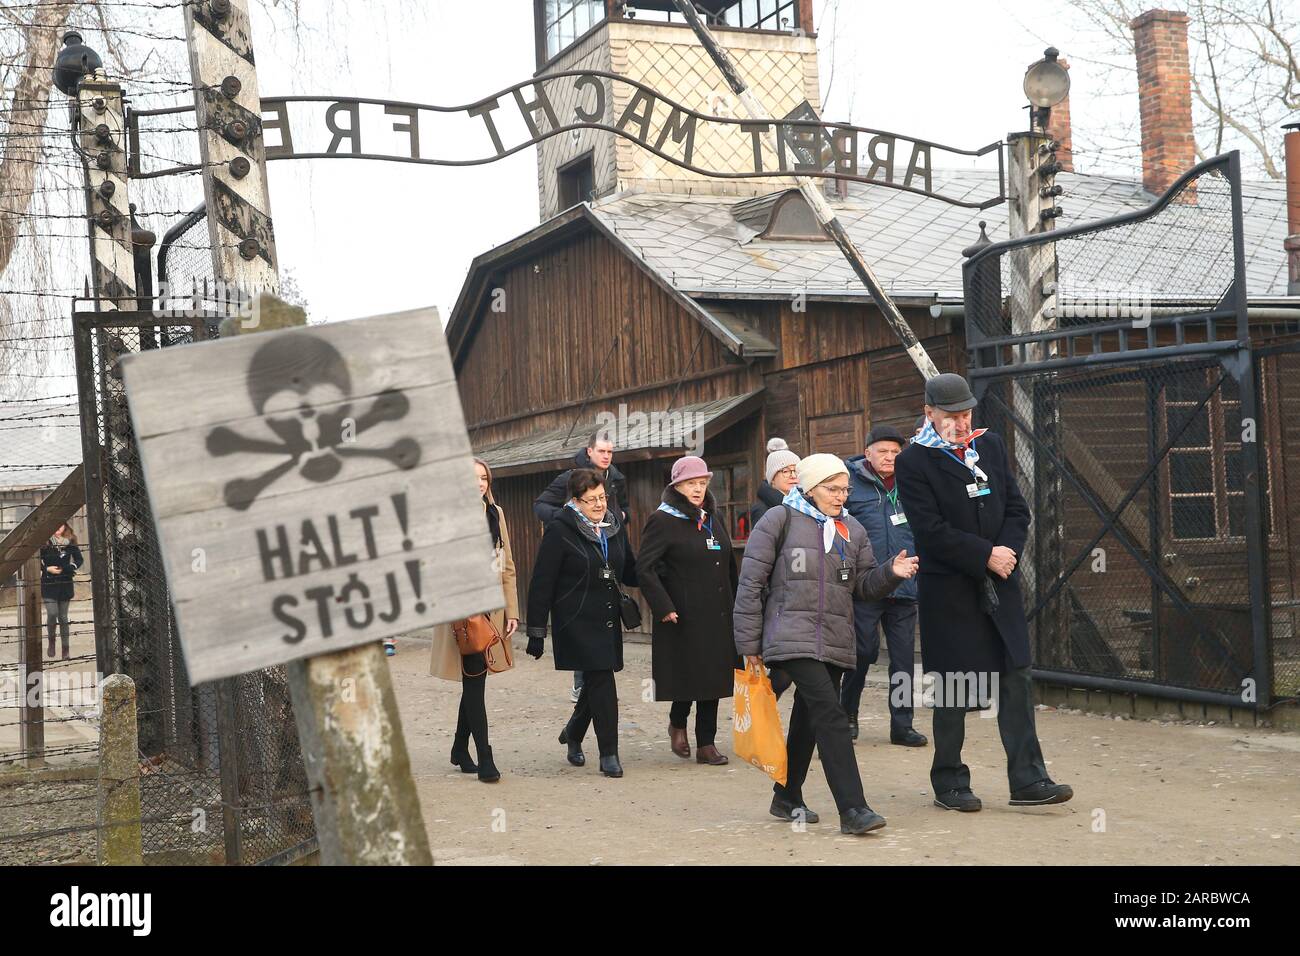 Ehemalige Häftlinge des Konzentrationslagers Auschwitz-Birkenau. 75. Jahrestag der Befreiung von Auschwitz und des Holocaust-Gedenktages. Das größte deutsche NS-Konzentrations- und Vernichtungslager KL Auschwitz-Birkenau wurde am 27. Januar 1945 von der Roten Armee befreit. Stockfoto